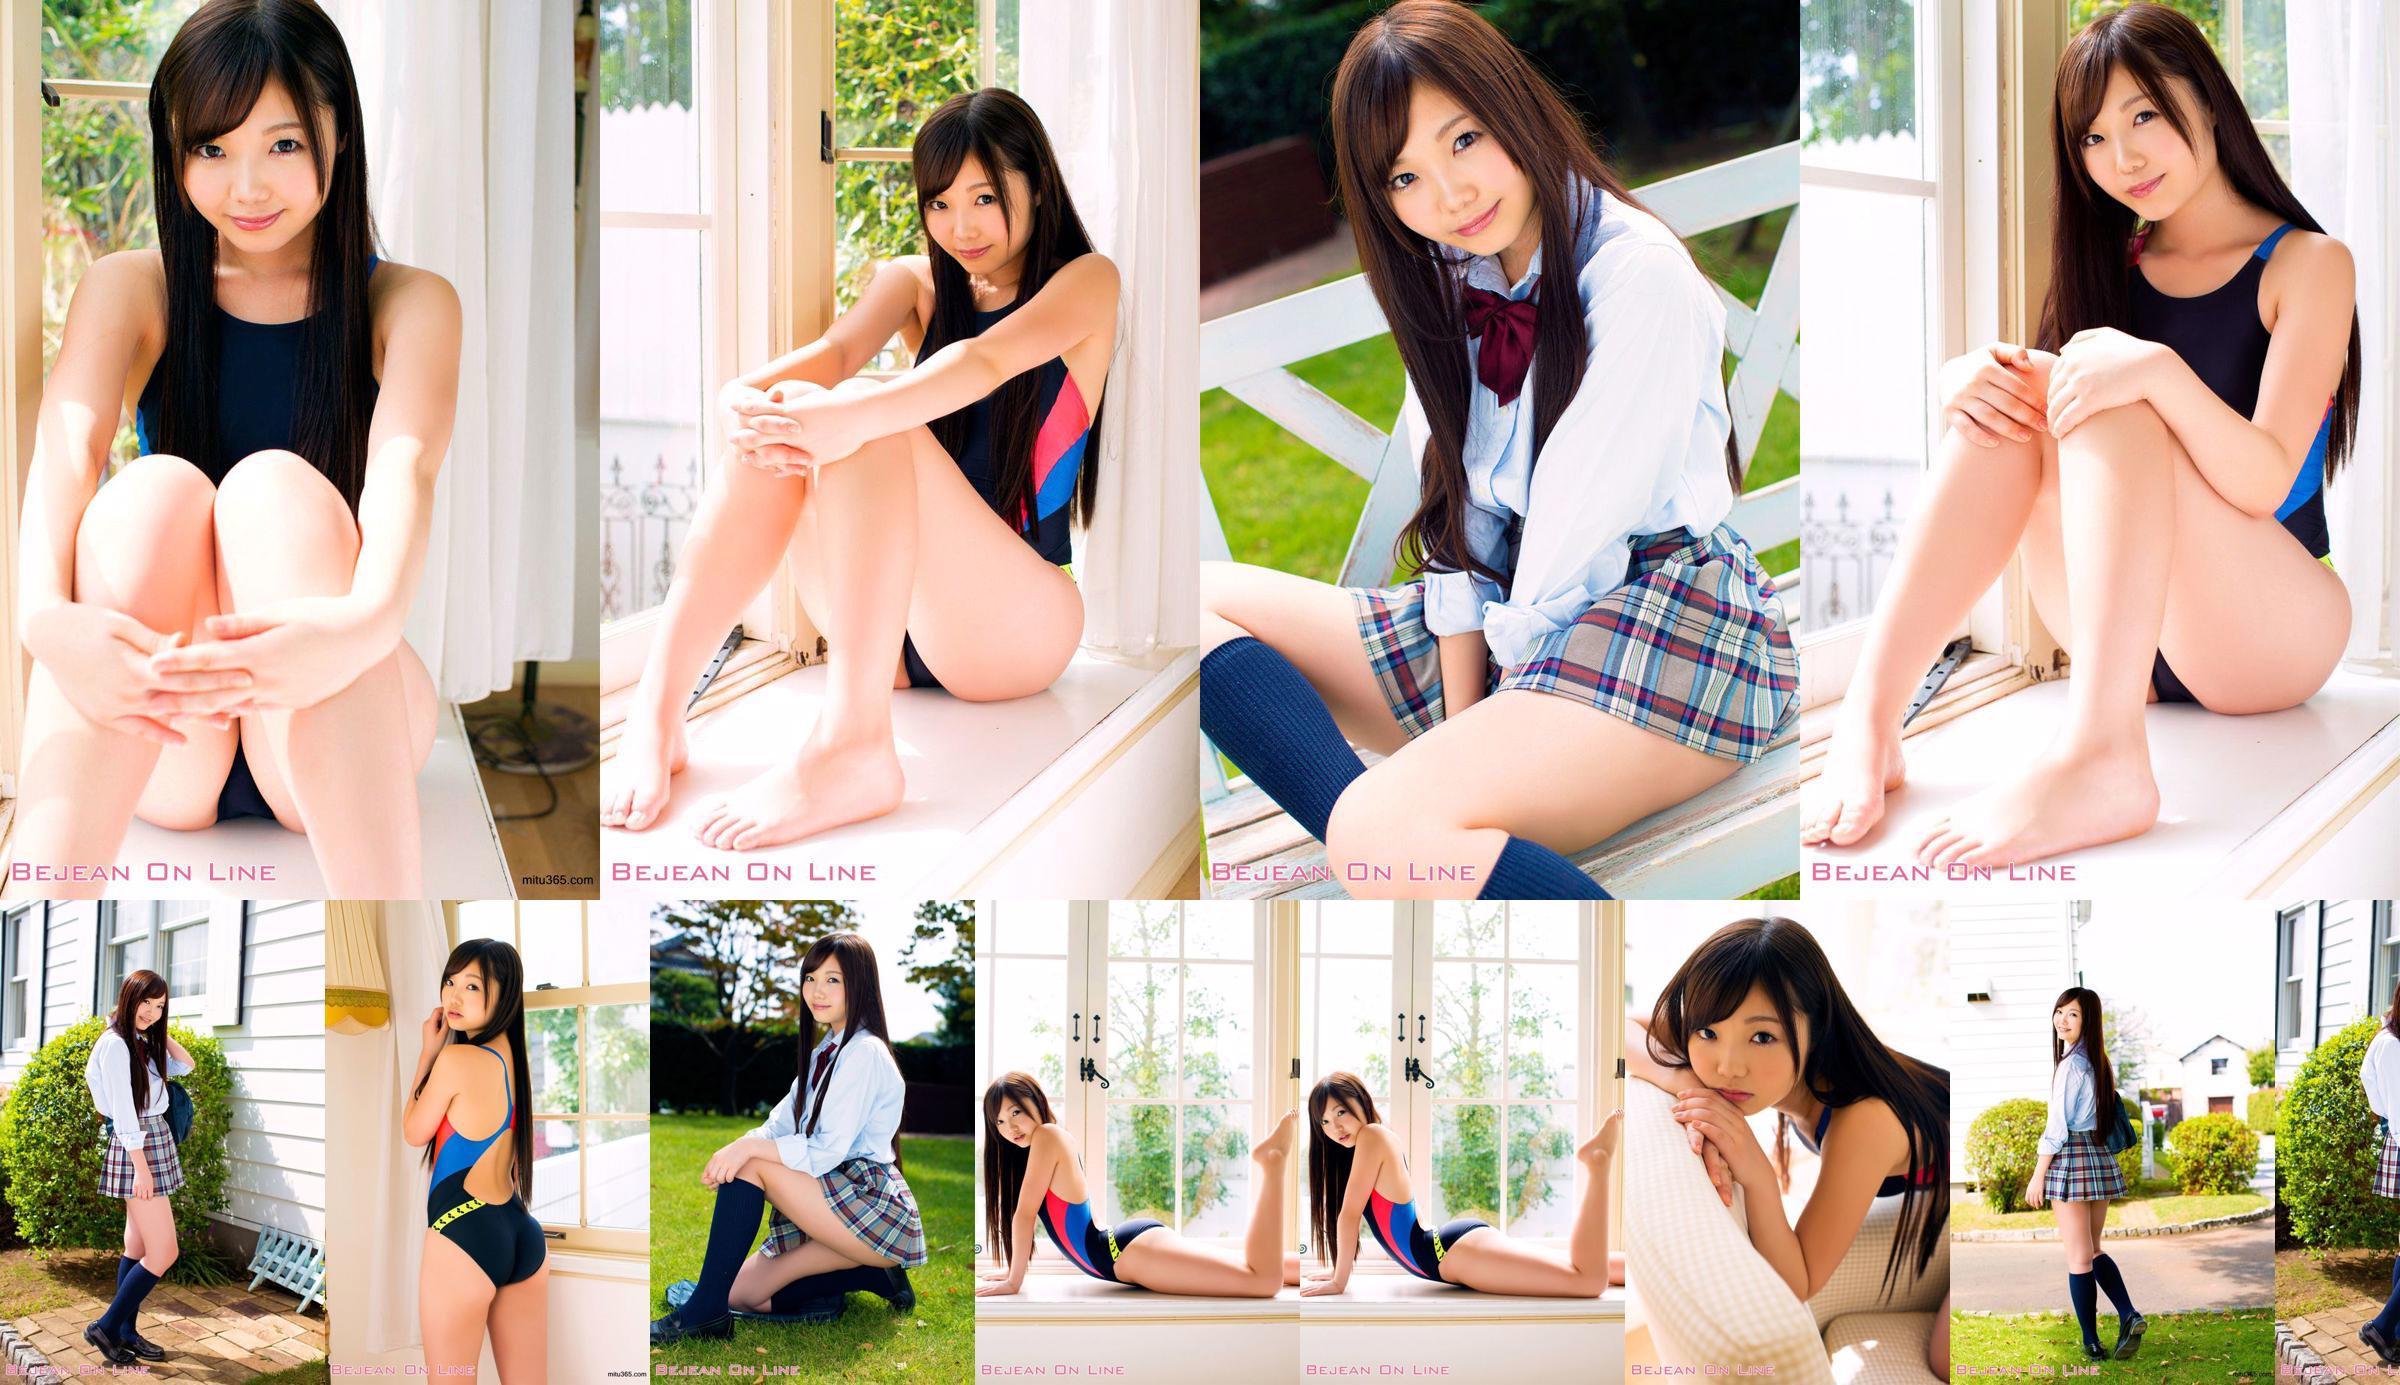 Rie Matsuoka Matsuoka Riei [Bejean On Line] Scuola privata per ragazze Bejean No.3dd431 Pagina 9